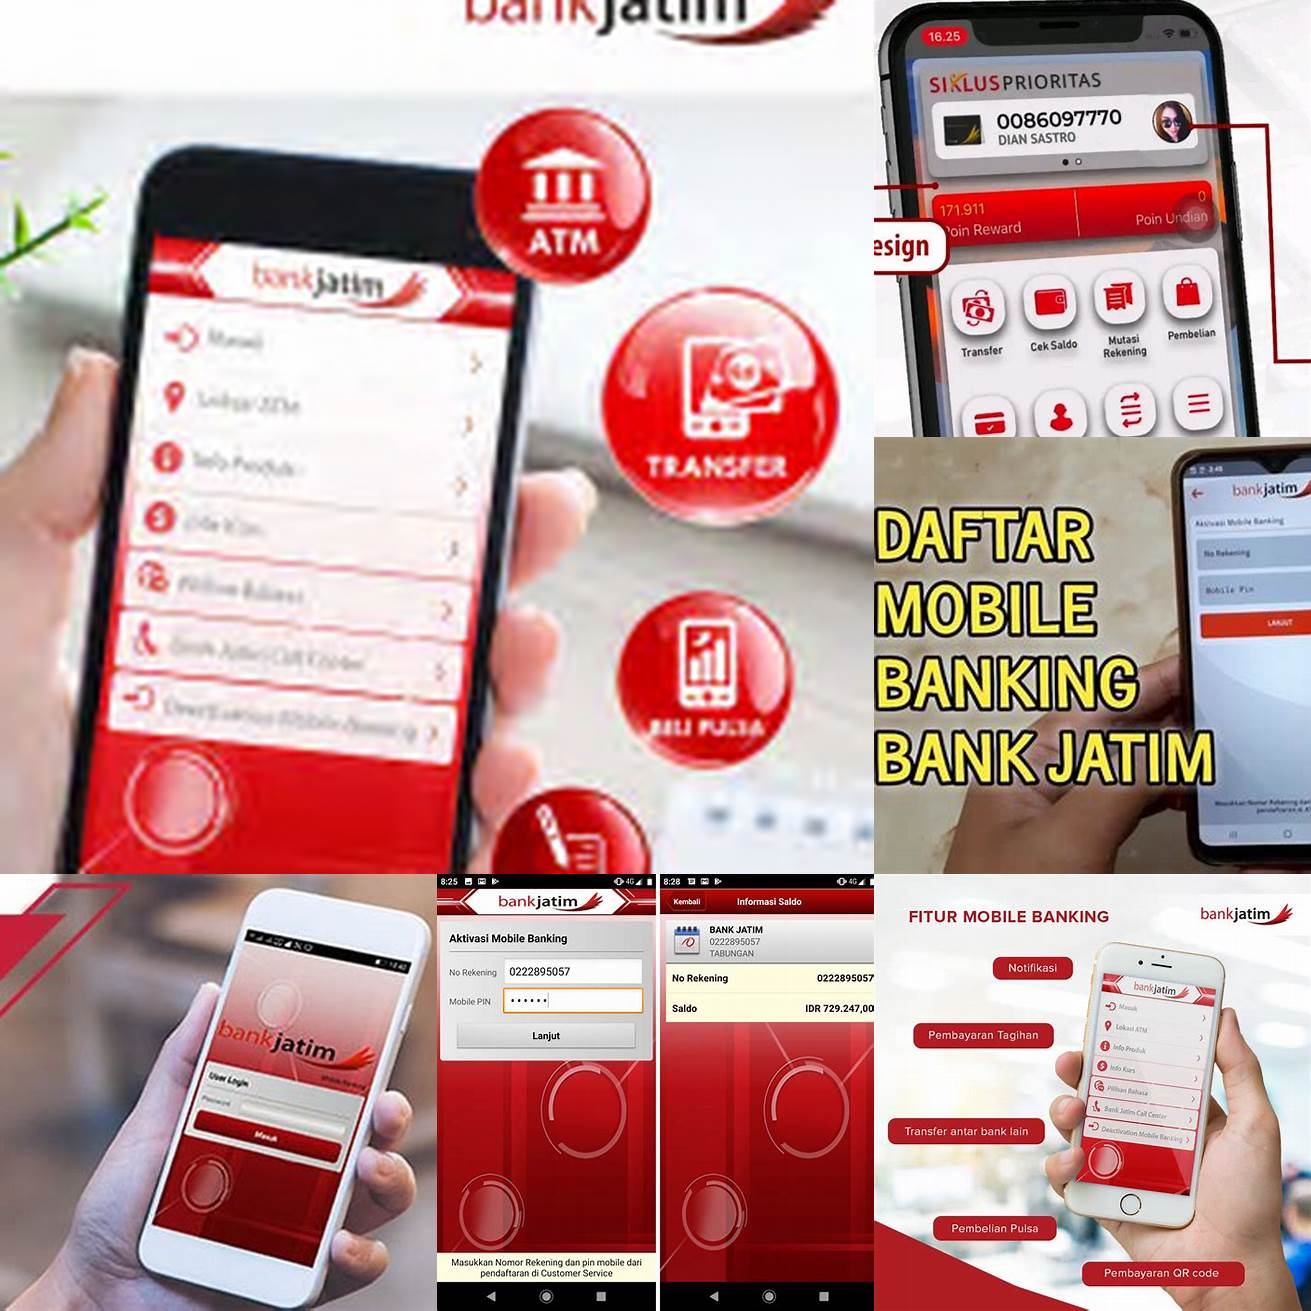 Download aplikasi mobile banking Bank Jatim di Google Play Store atau App Store